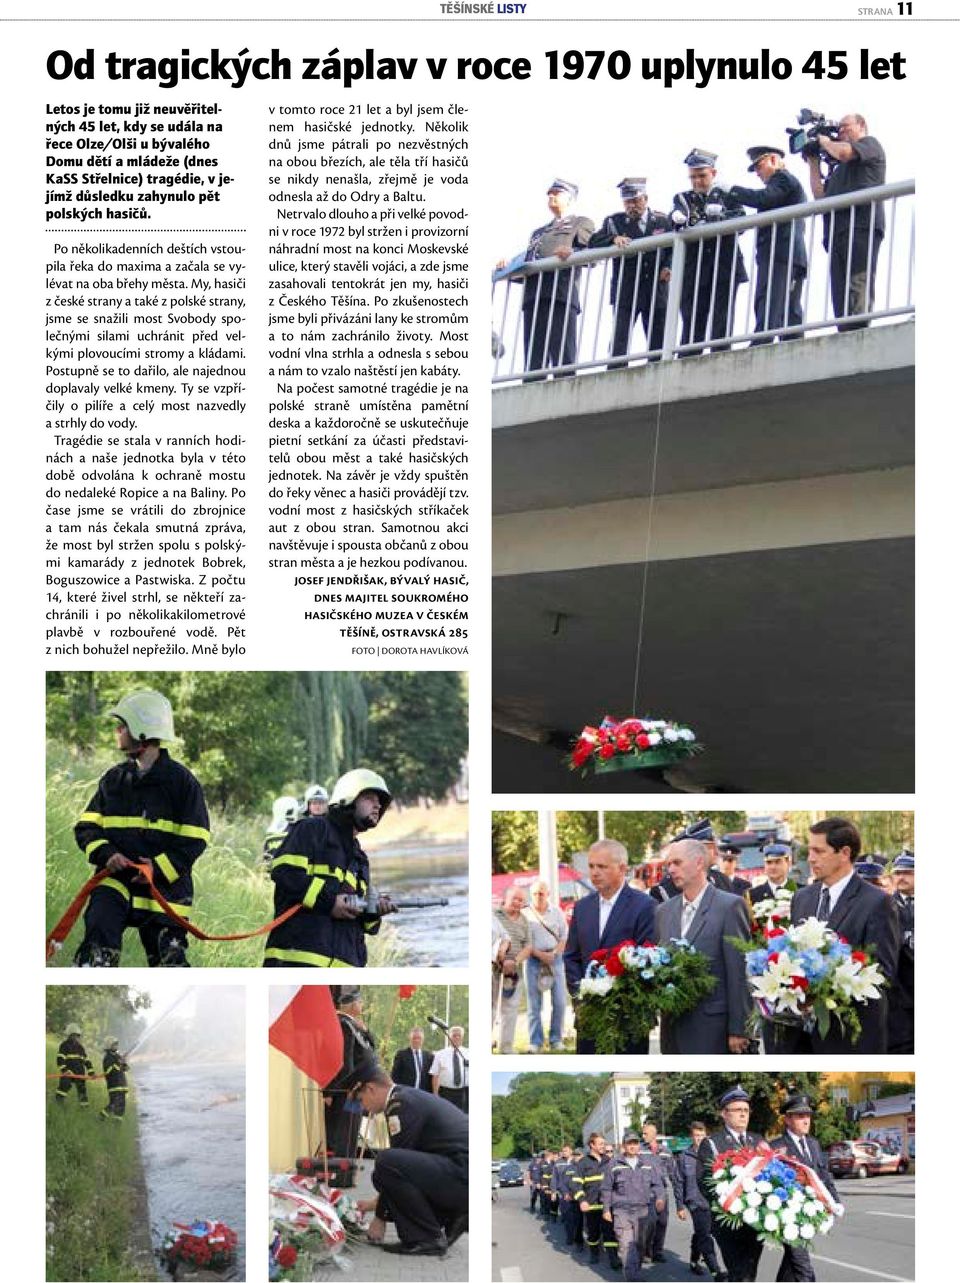 My, hasiči z české strany a také z polské strany, jsme se snažili most Svobody společnými silami uchránit před velkými plovoucími stromy a kládami.